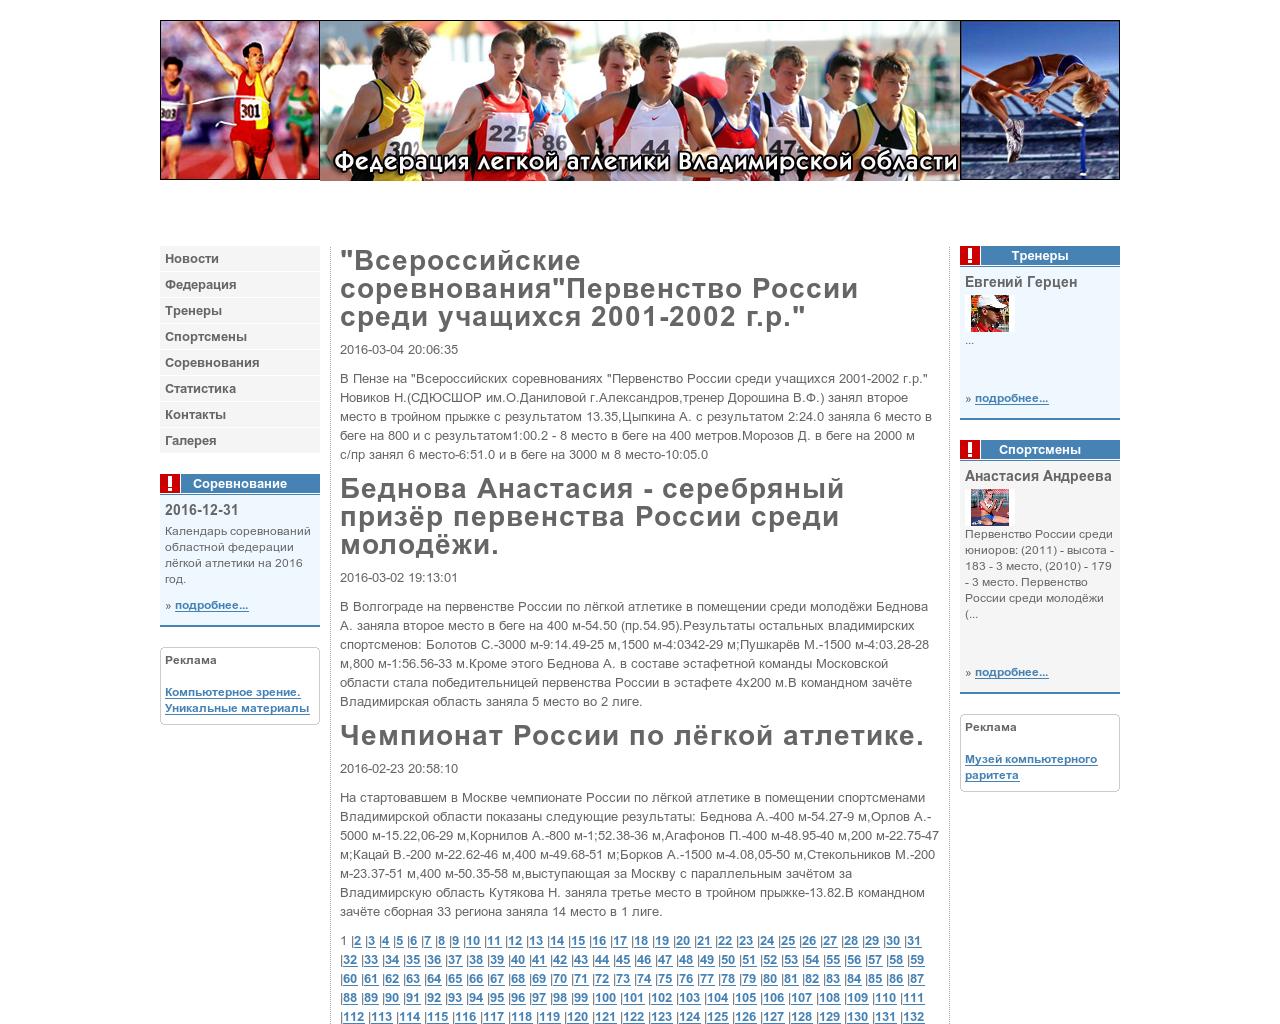 Изображение сайта atlet33.ru в разрешении 1280x1024